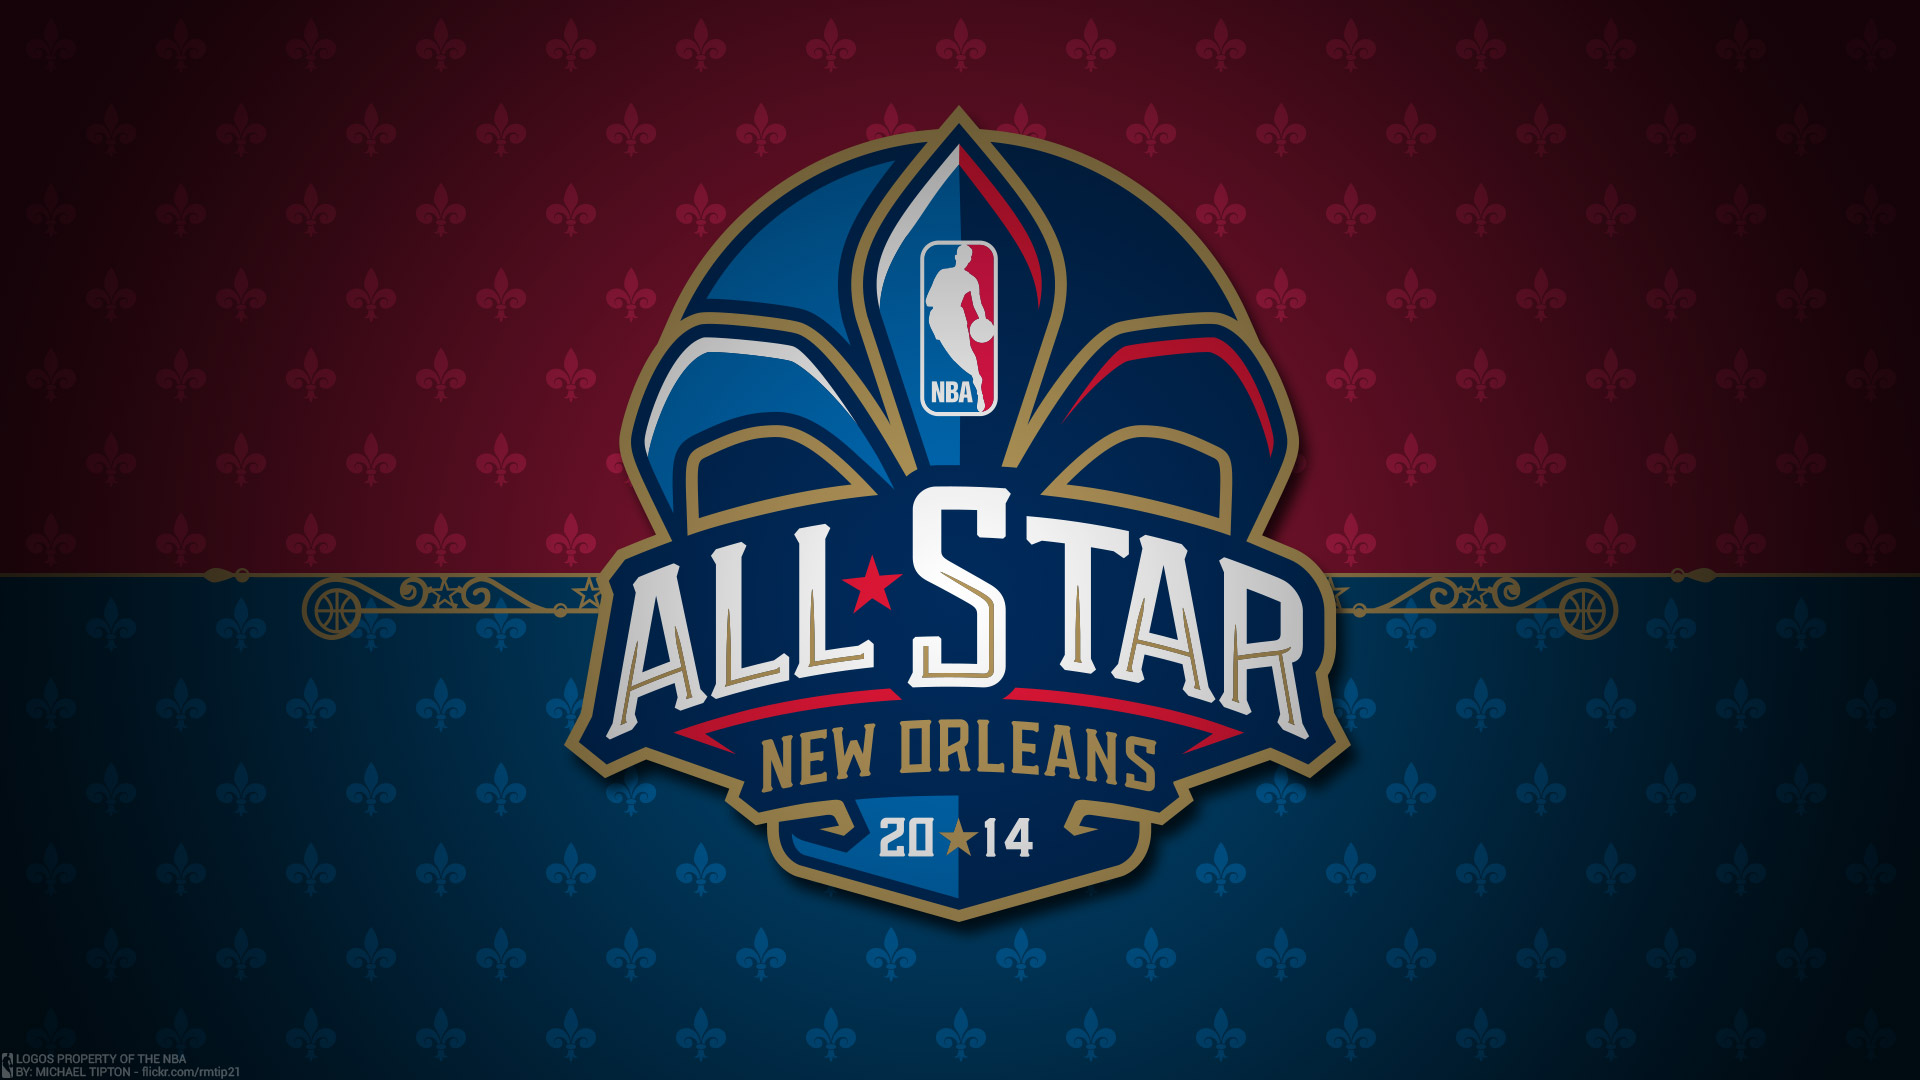 2014 NBA All-Star Logo 1920×1080 Wallpaper | Basketball Wallpapers at